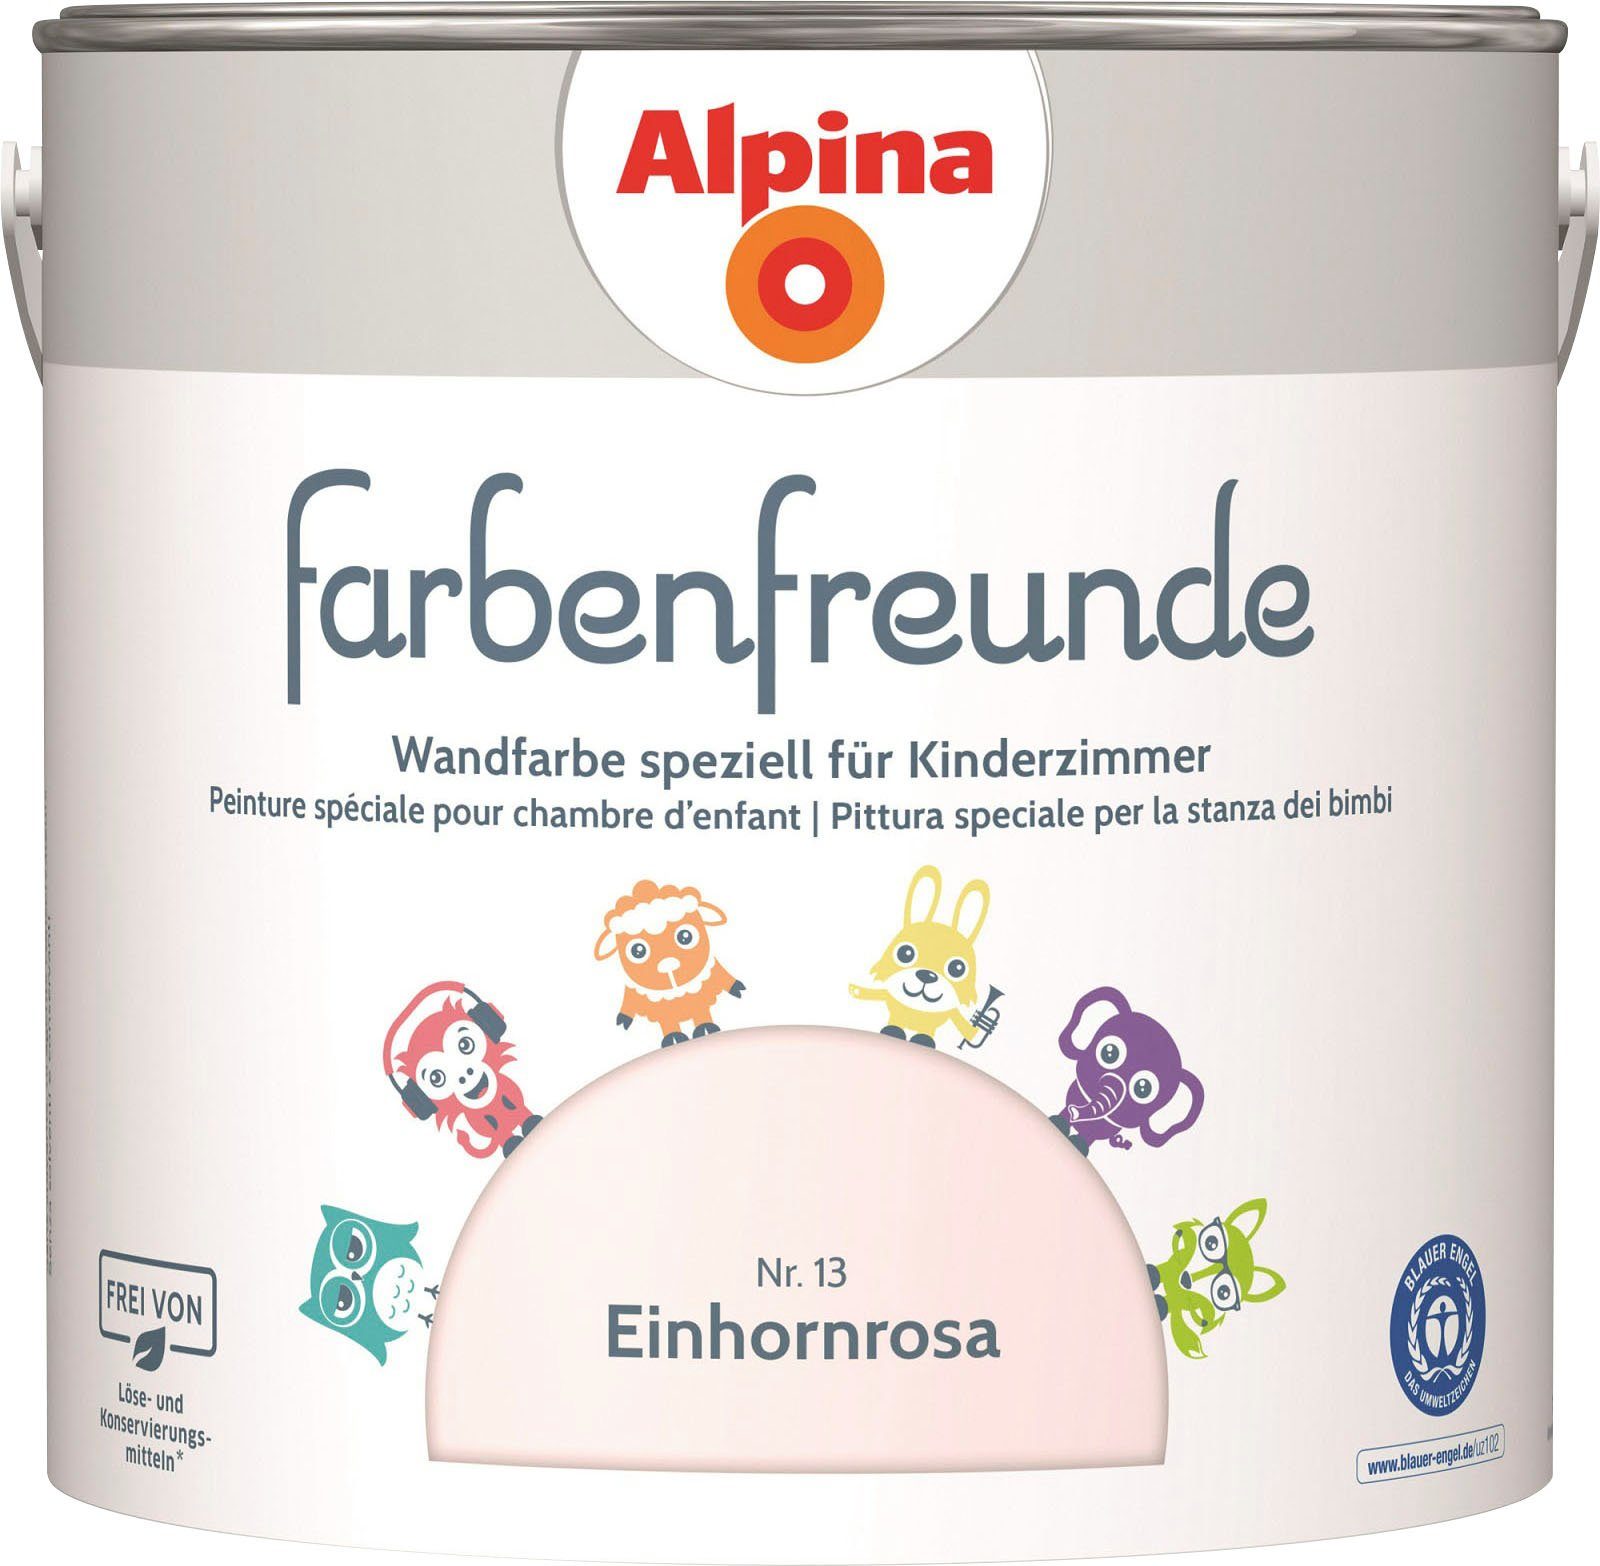 Kinderzimmer, Wandfarbe für Alpina matt, Einhornrosa Liter 2,5 farbenfreunde,